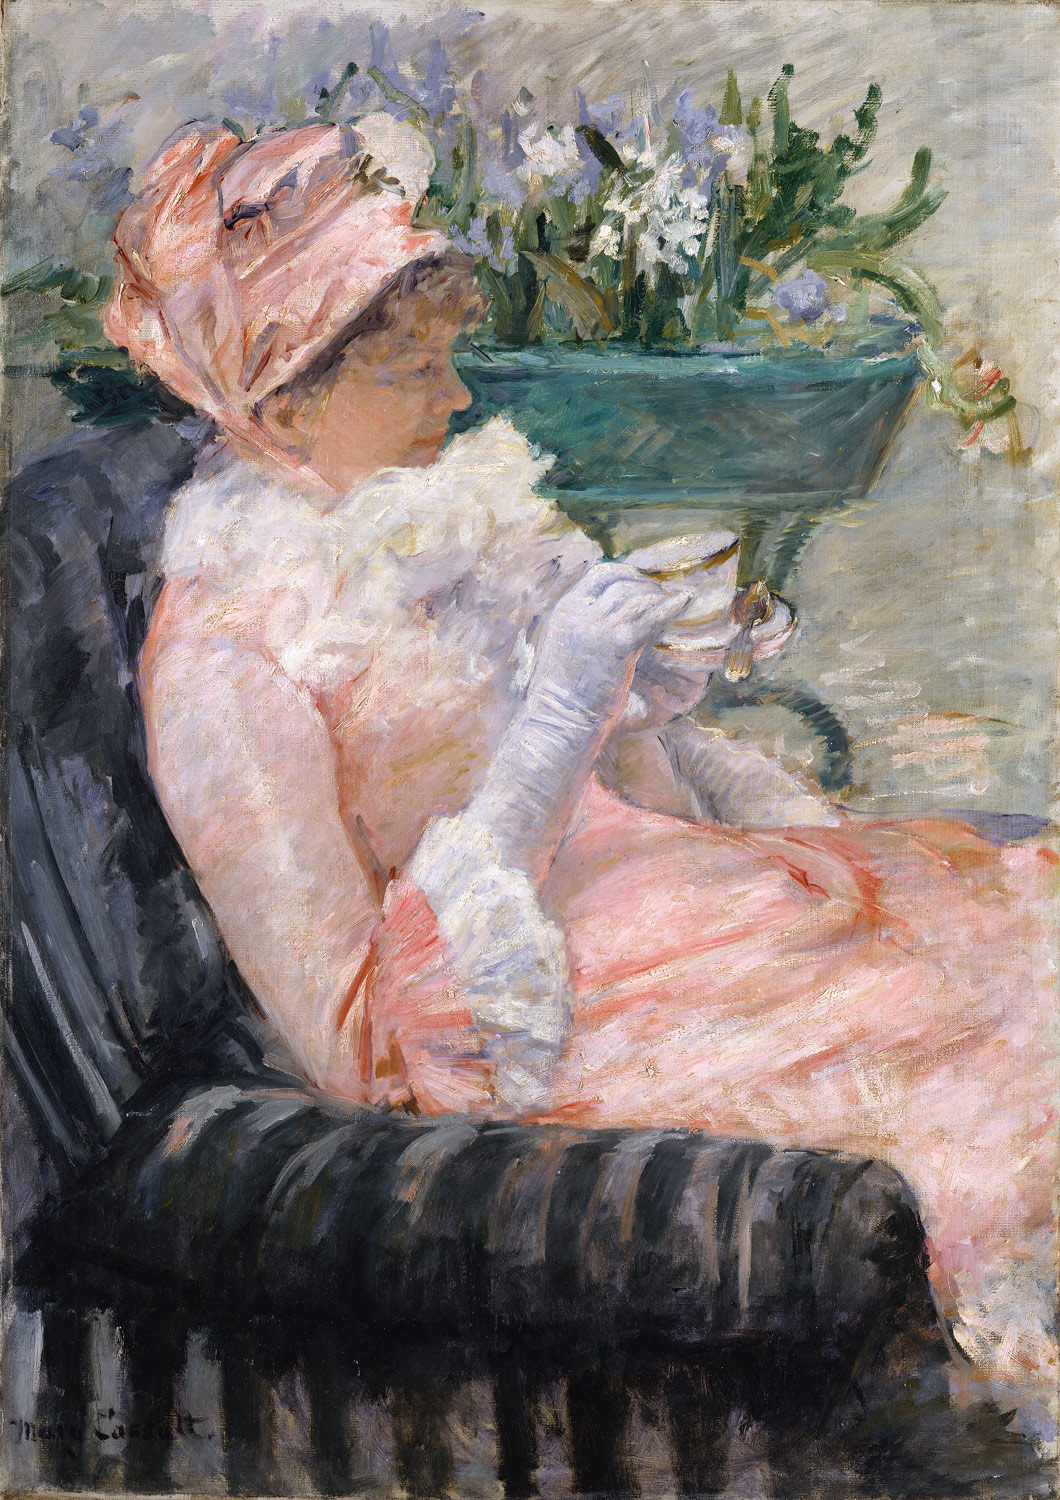 Mary+Cassatt-1844-1926 (217).jpg